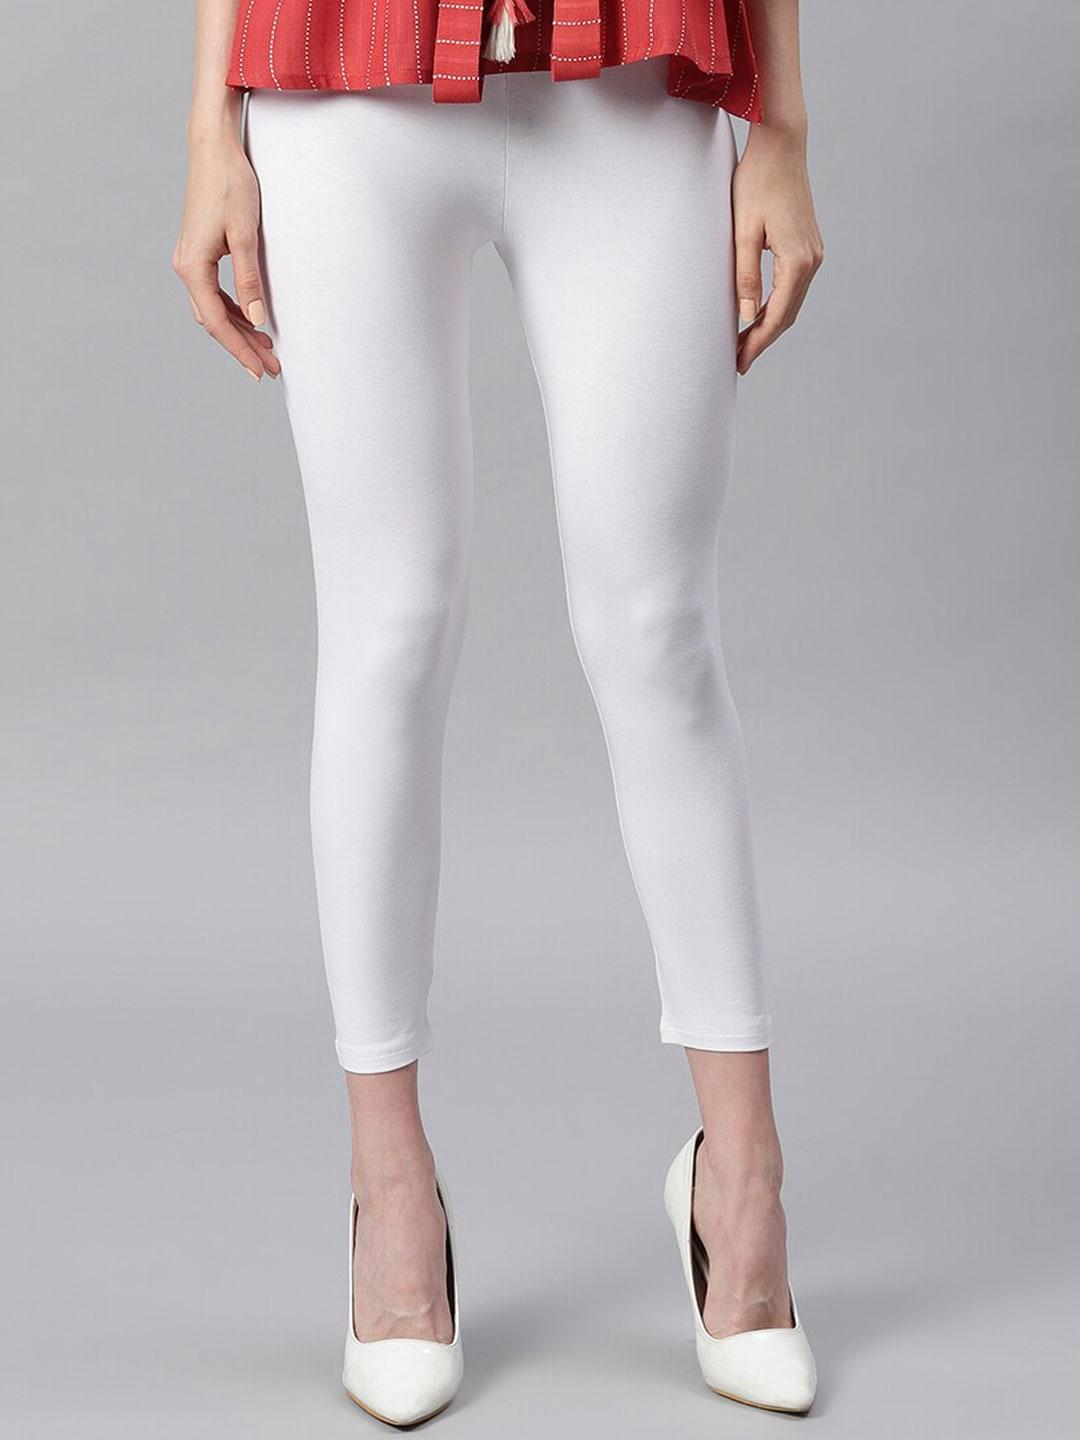 janasya-women-white-solid-ankle-length-leggings